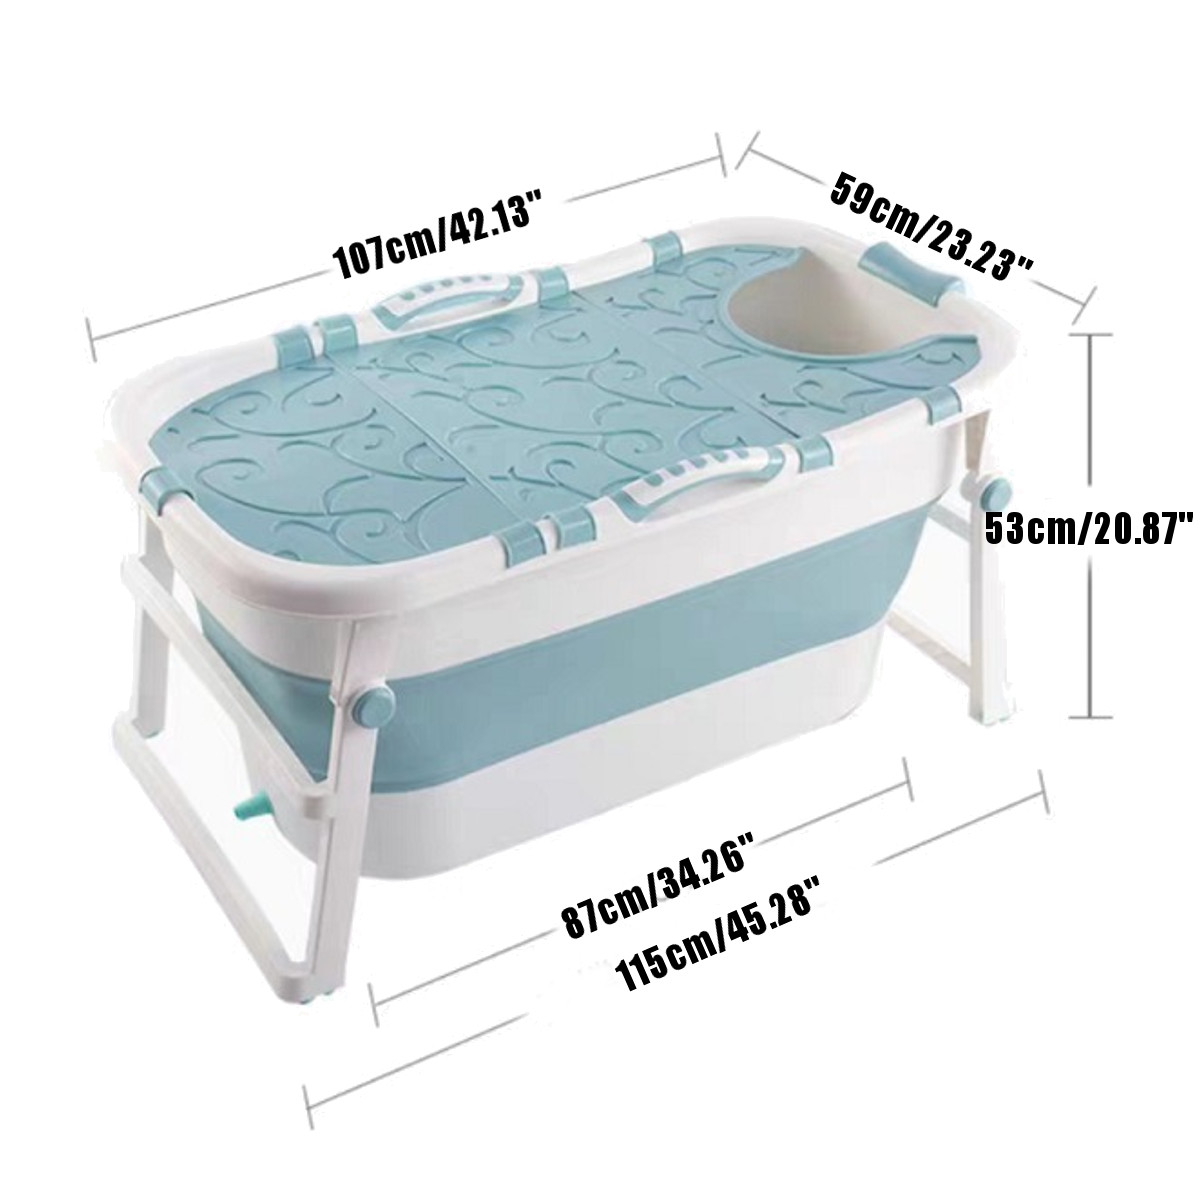 107x59x53cm-Folding-Bathtub-Portable-Bathroom-Large-Capacity-Soaking-PVC-Tub-SPA-Tub-1754366